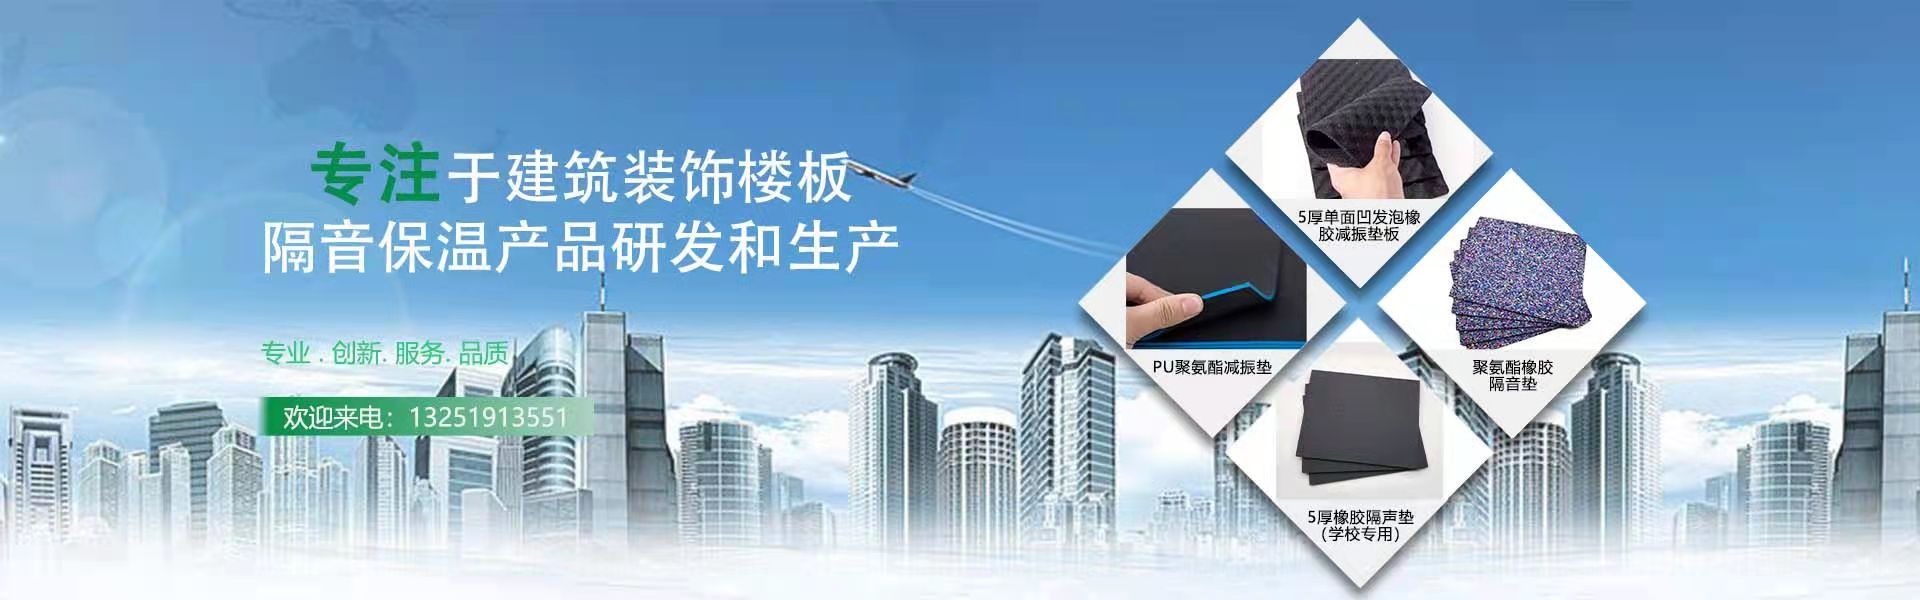 南通启德新材料科技有限公司官方网站